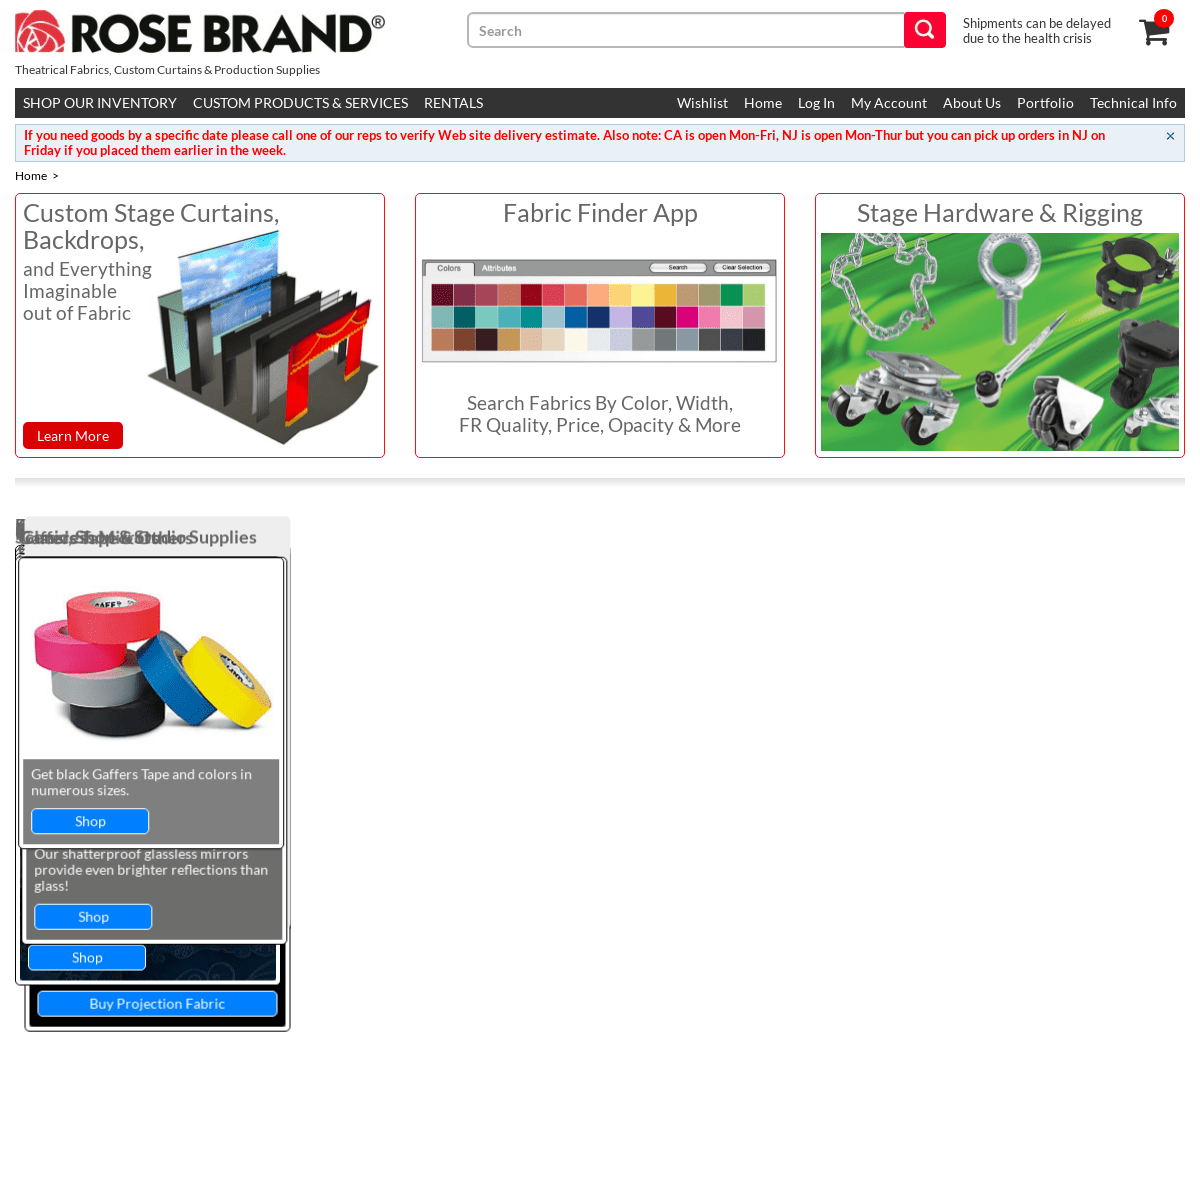 A complete backup of https://rosebrand.com